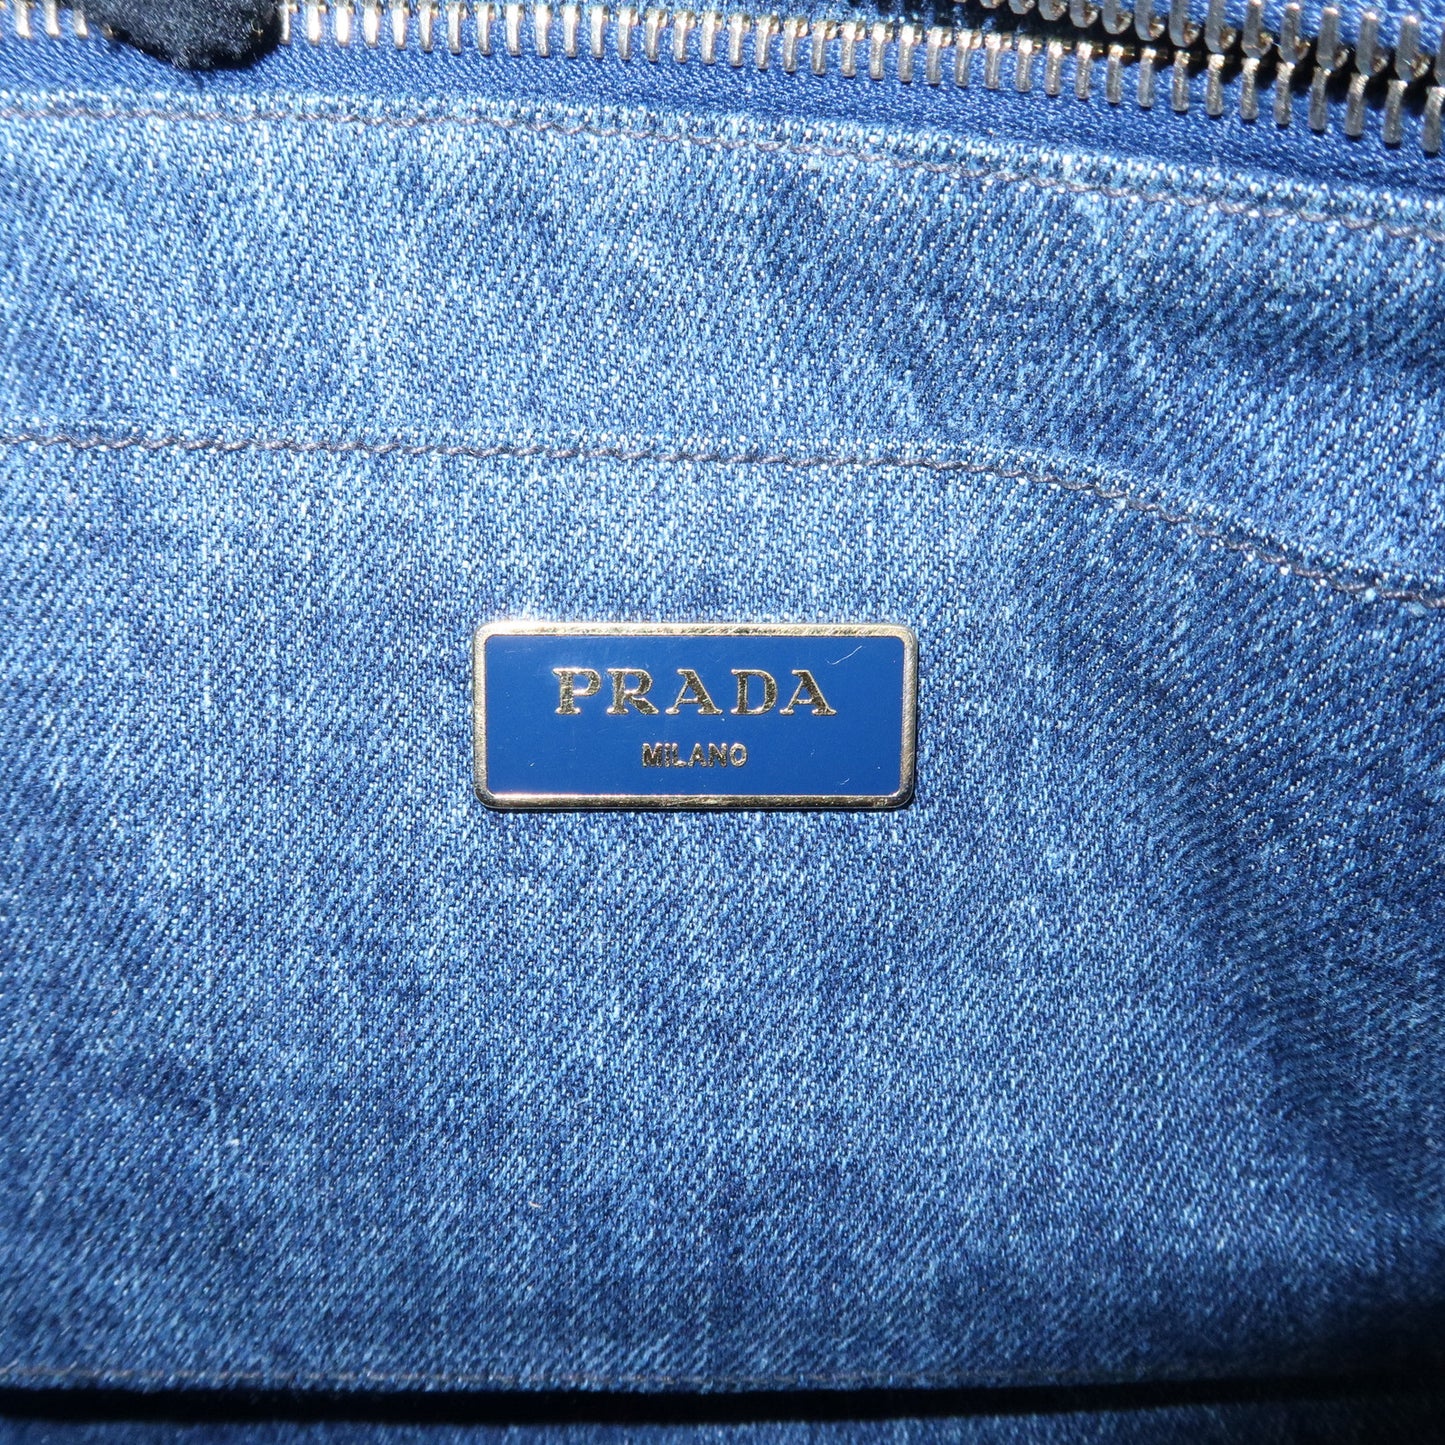 PRADA Logo Canapa Denim Tote Bag Hand Bag Navy B1877B